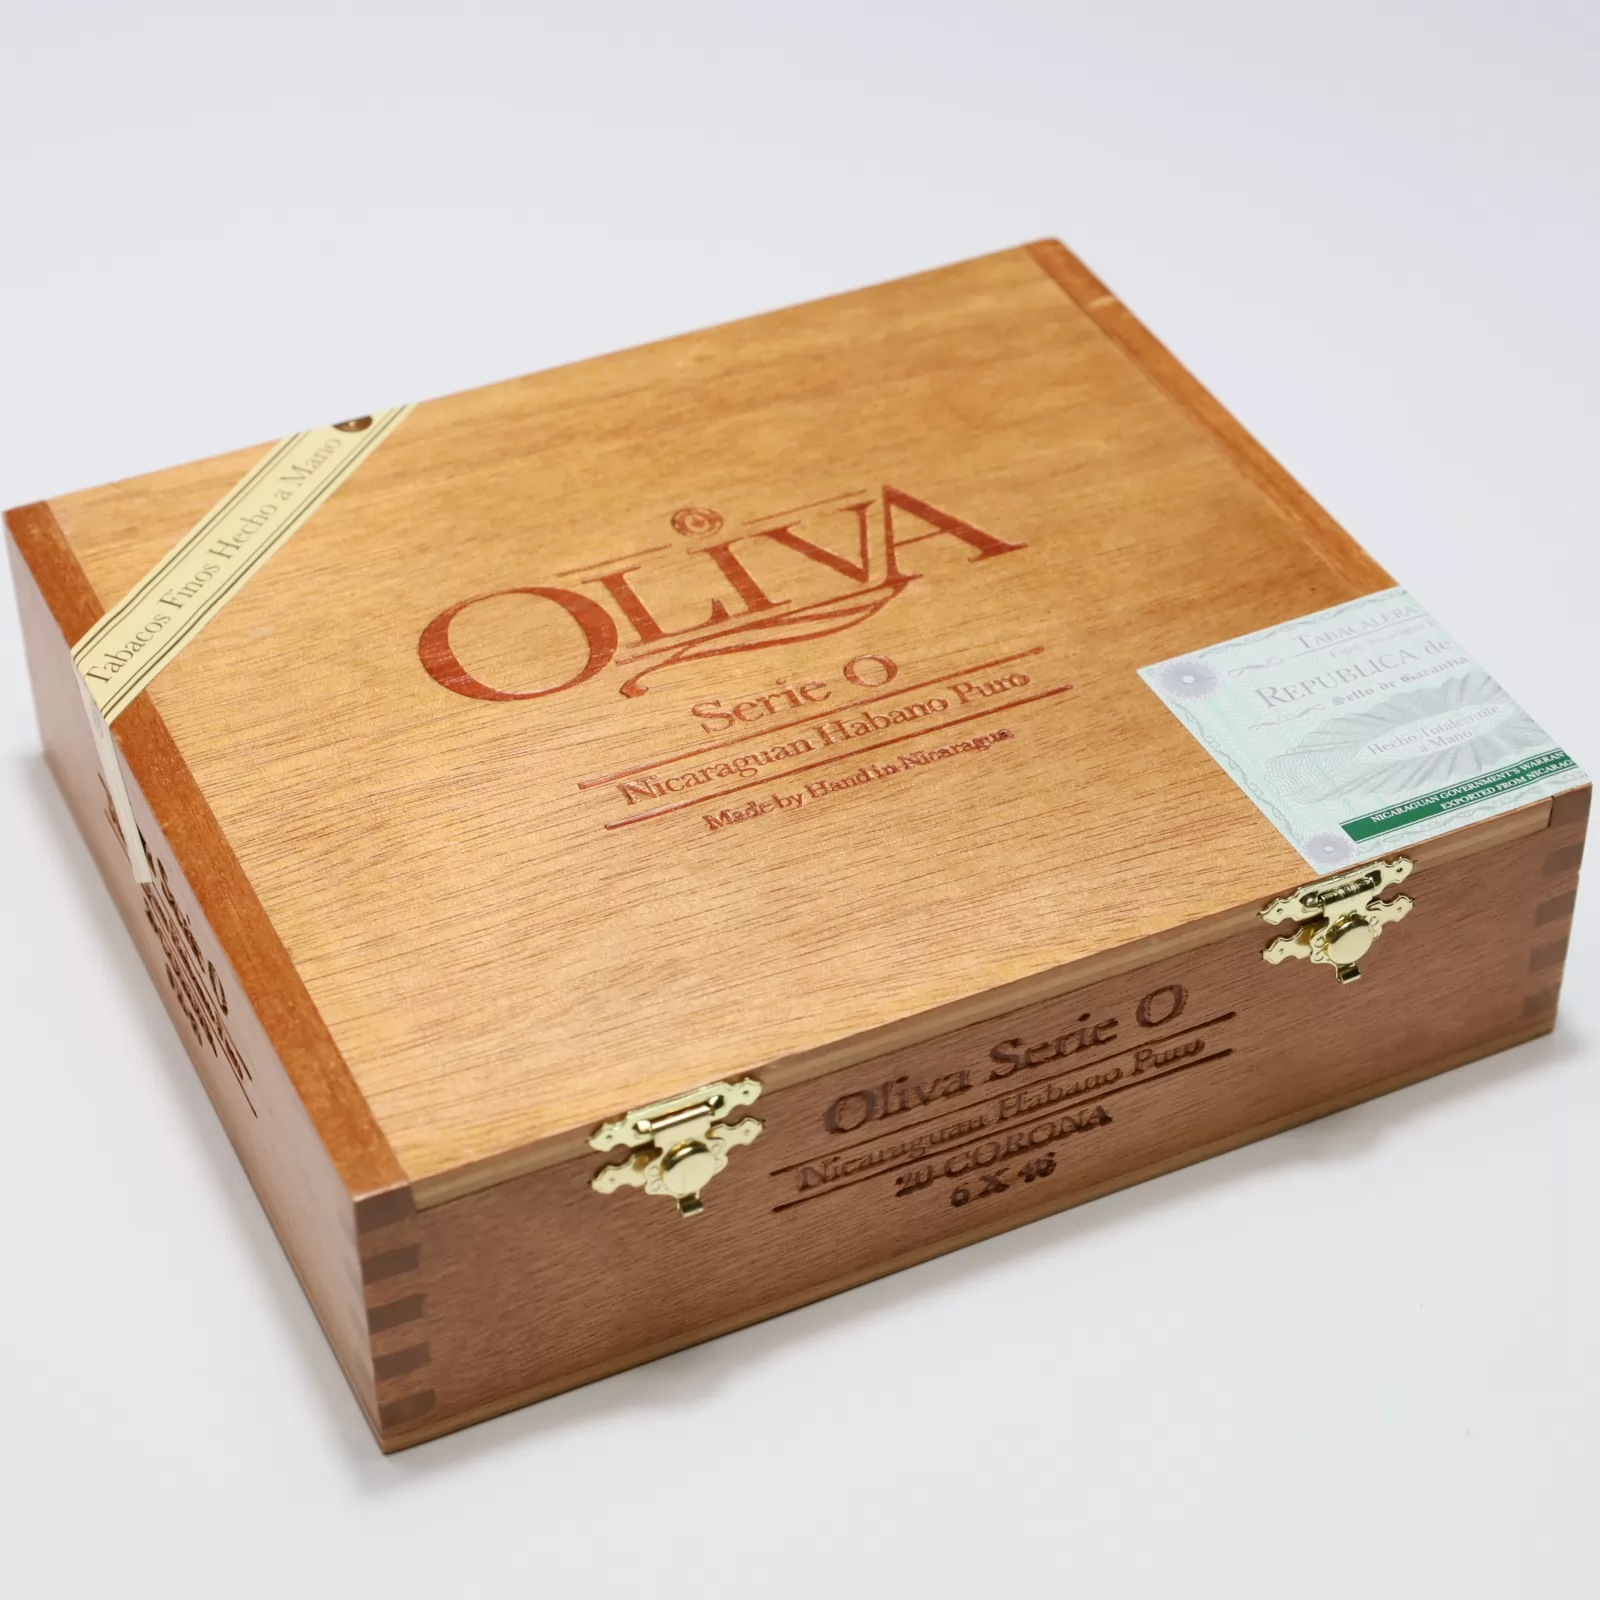 Oliva Serie O Corona